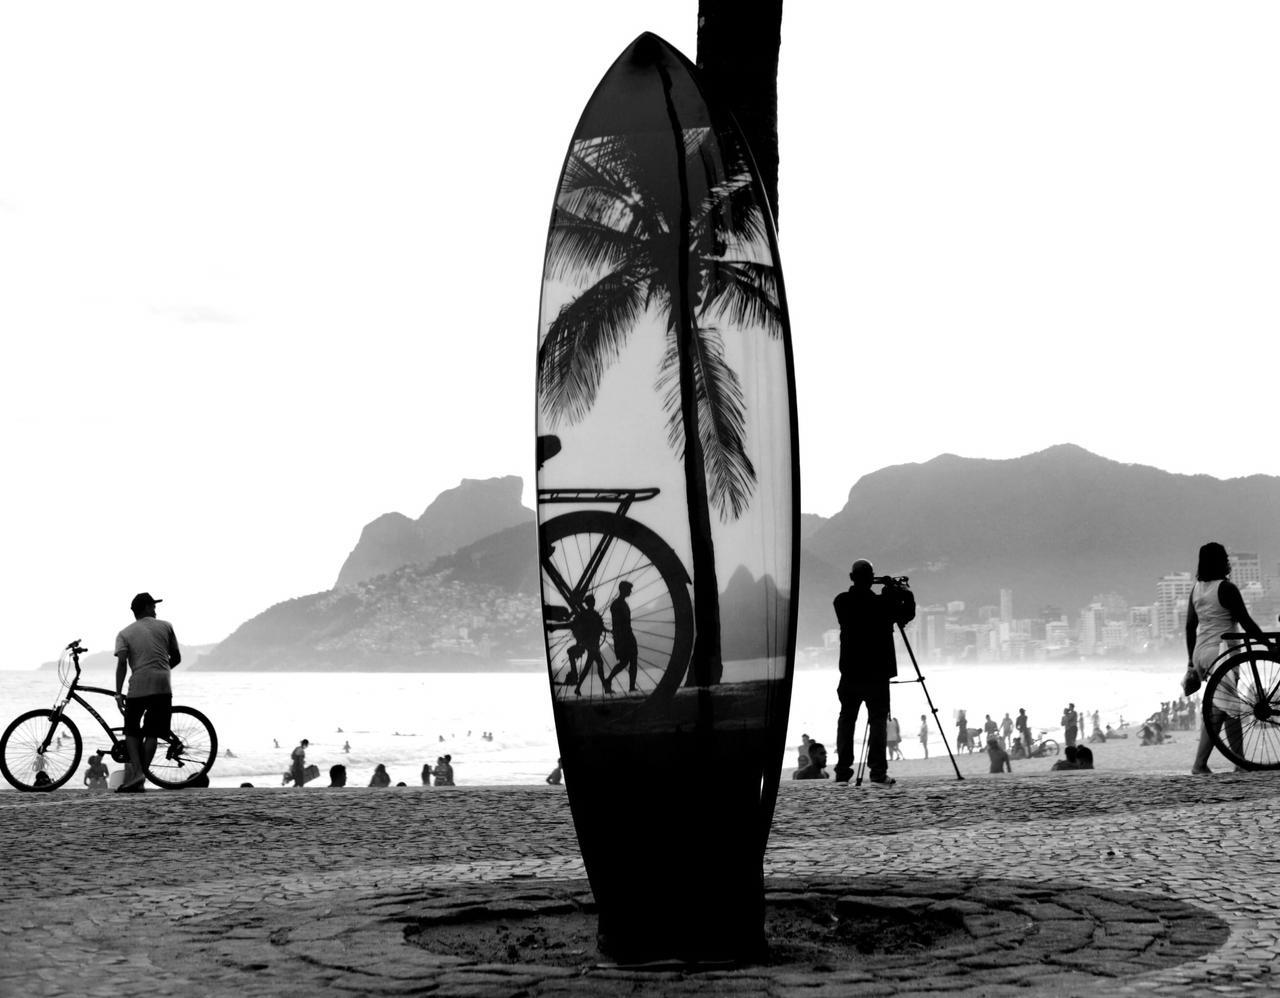 Surfboard Rio I - Rio de Janeiro series